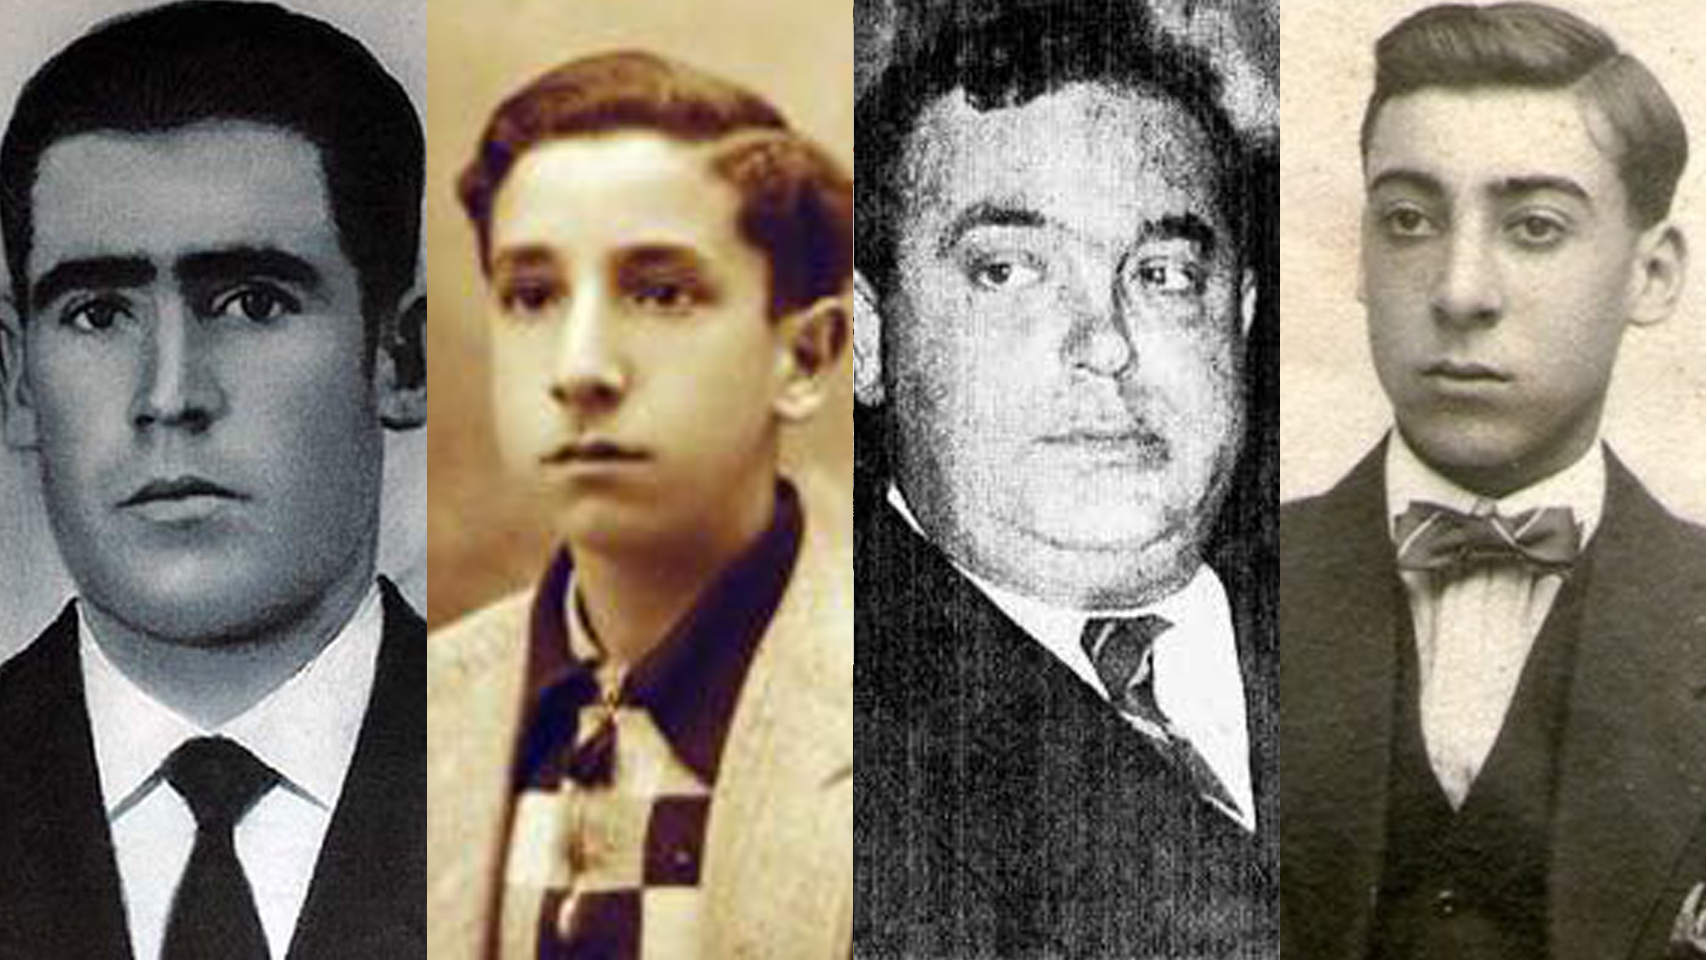 Valerico Canales, Enric Bosch Tomás, Dimas Madariaga y Joam Colom.